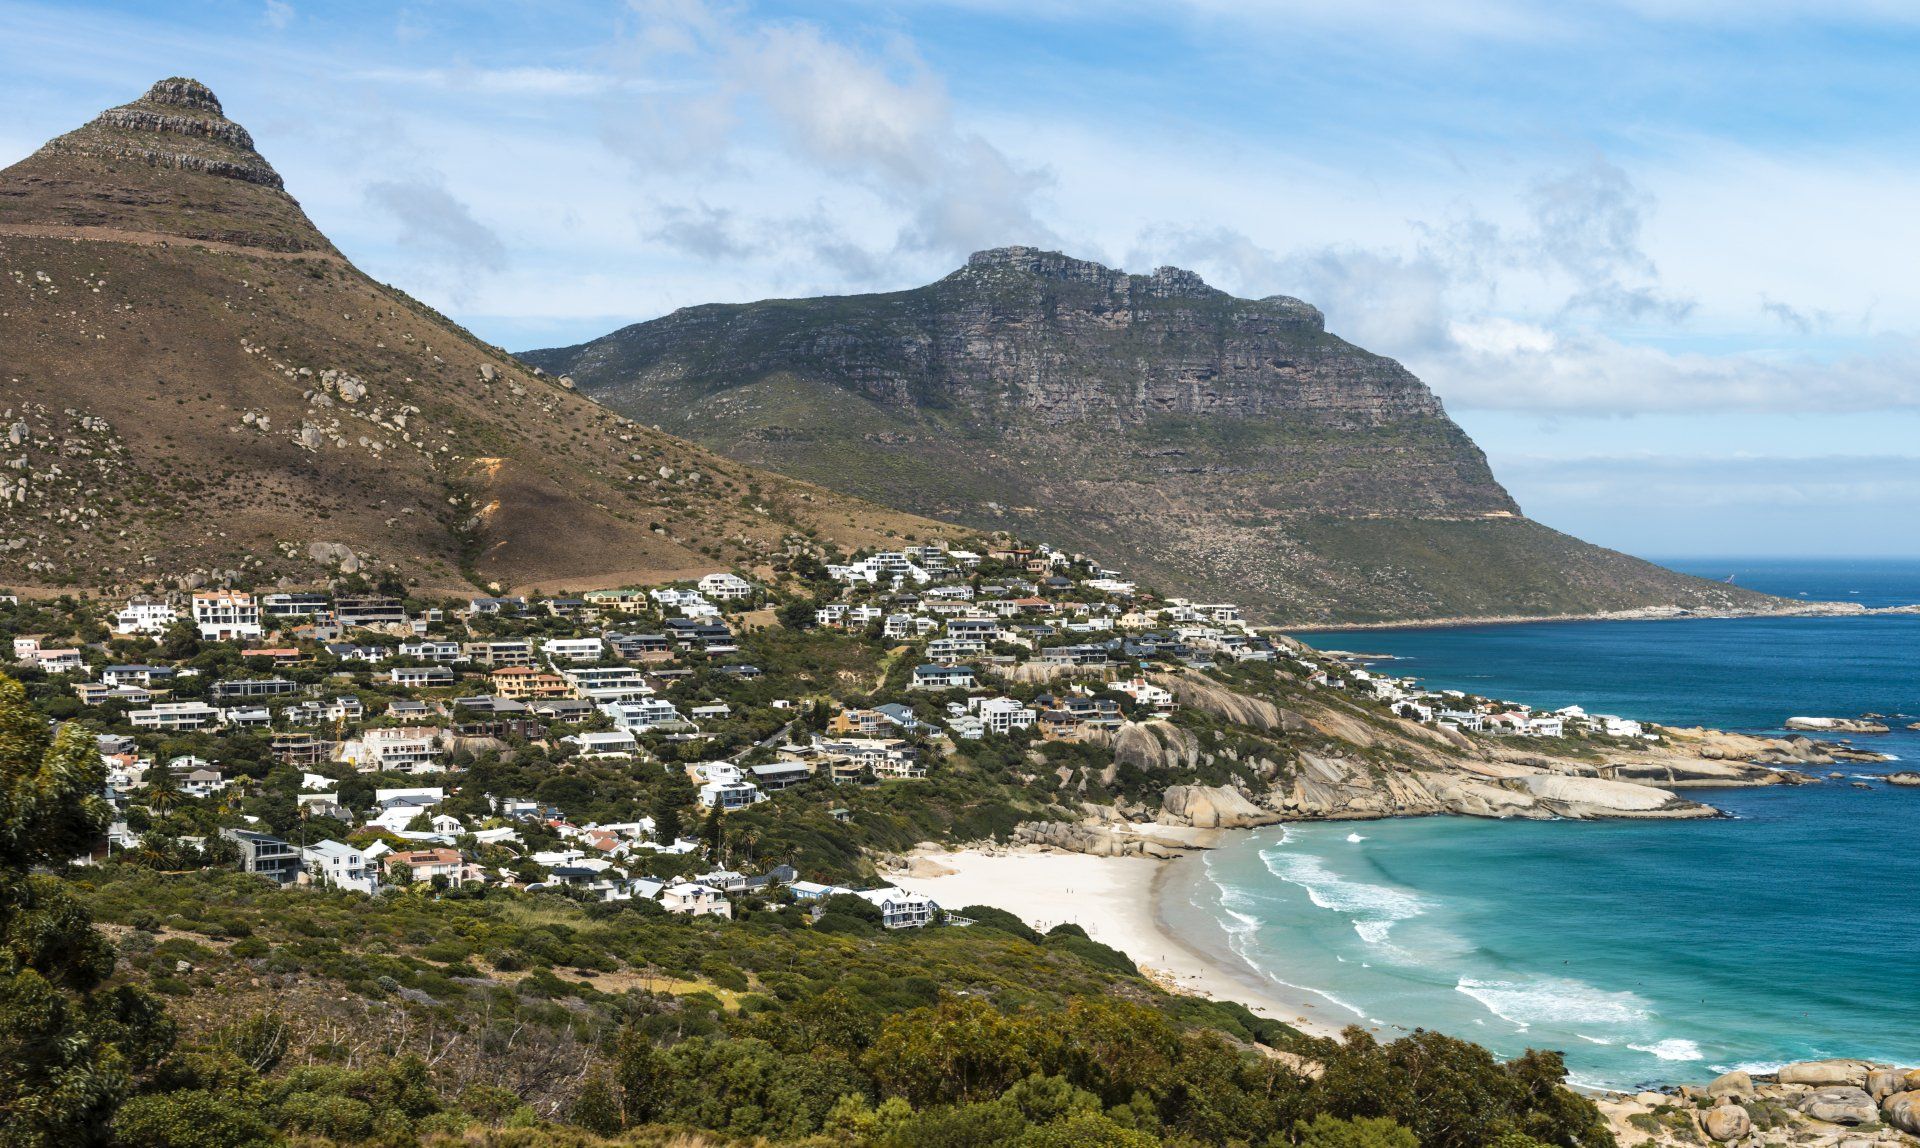 foto gezicht op Kaapstad (Z.A.) vanaf heuvel